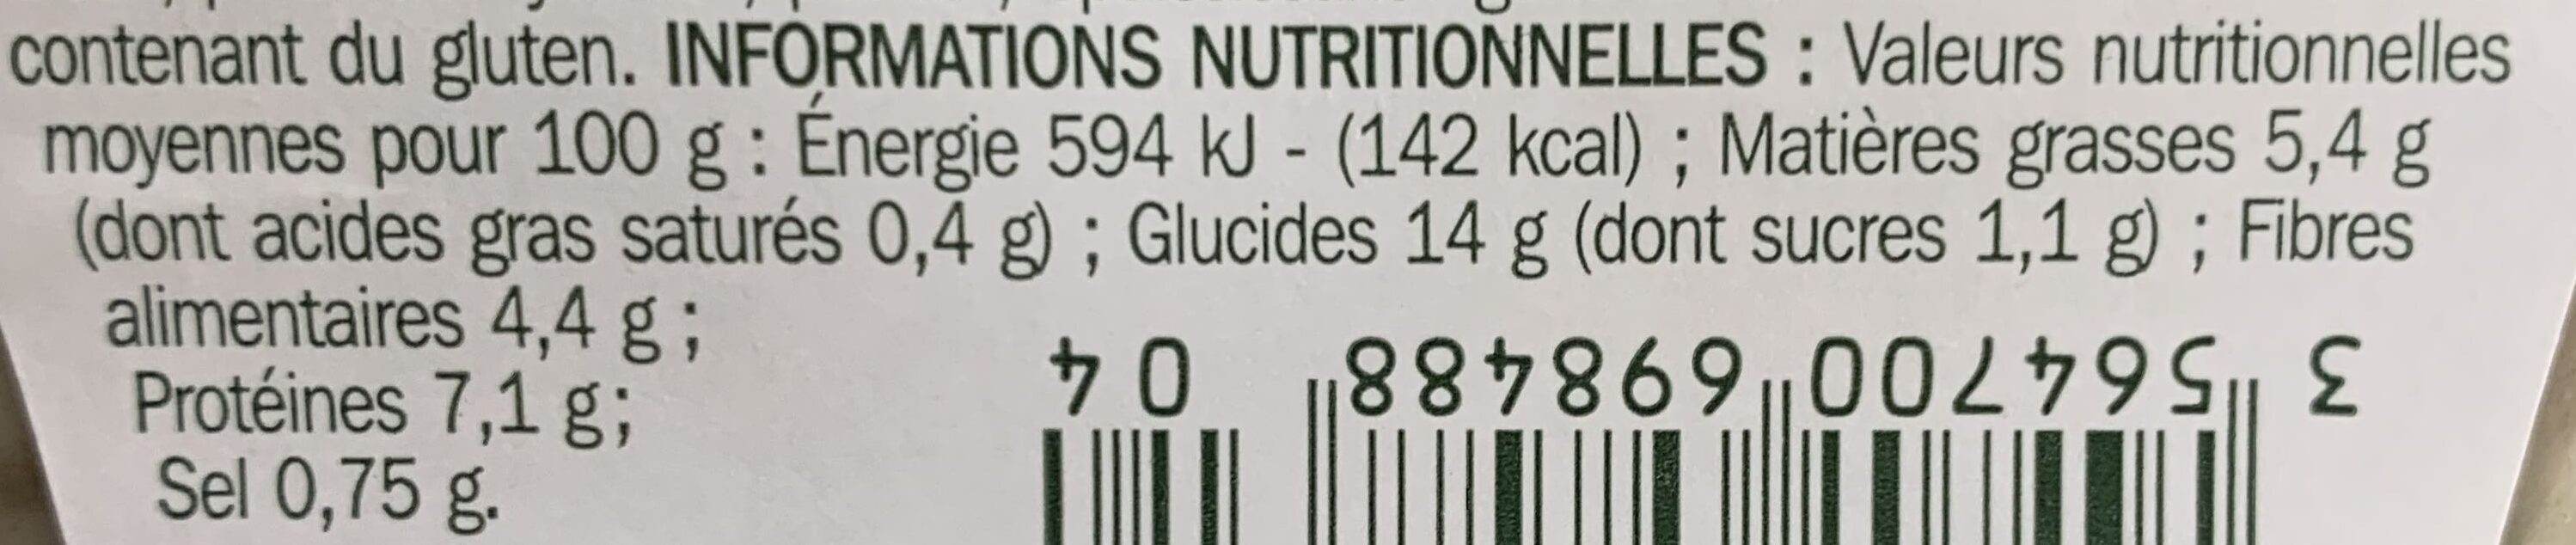 Salade de lentilles - Nutrition facts - fr